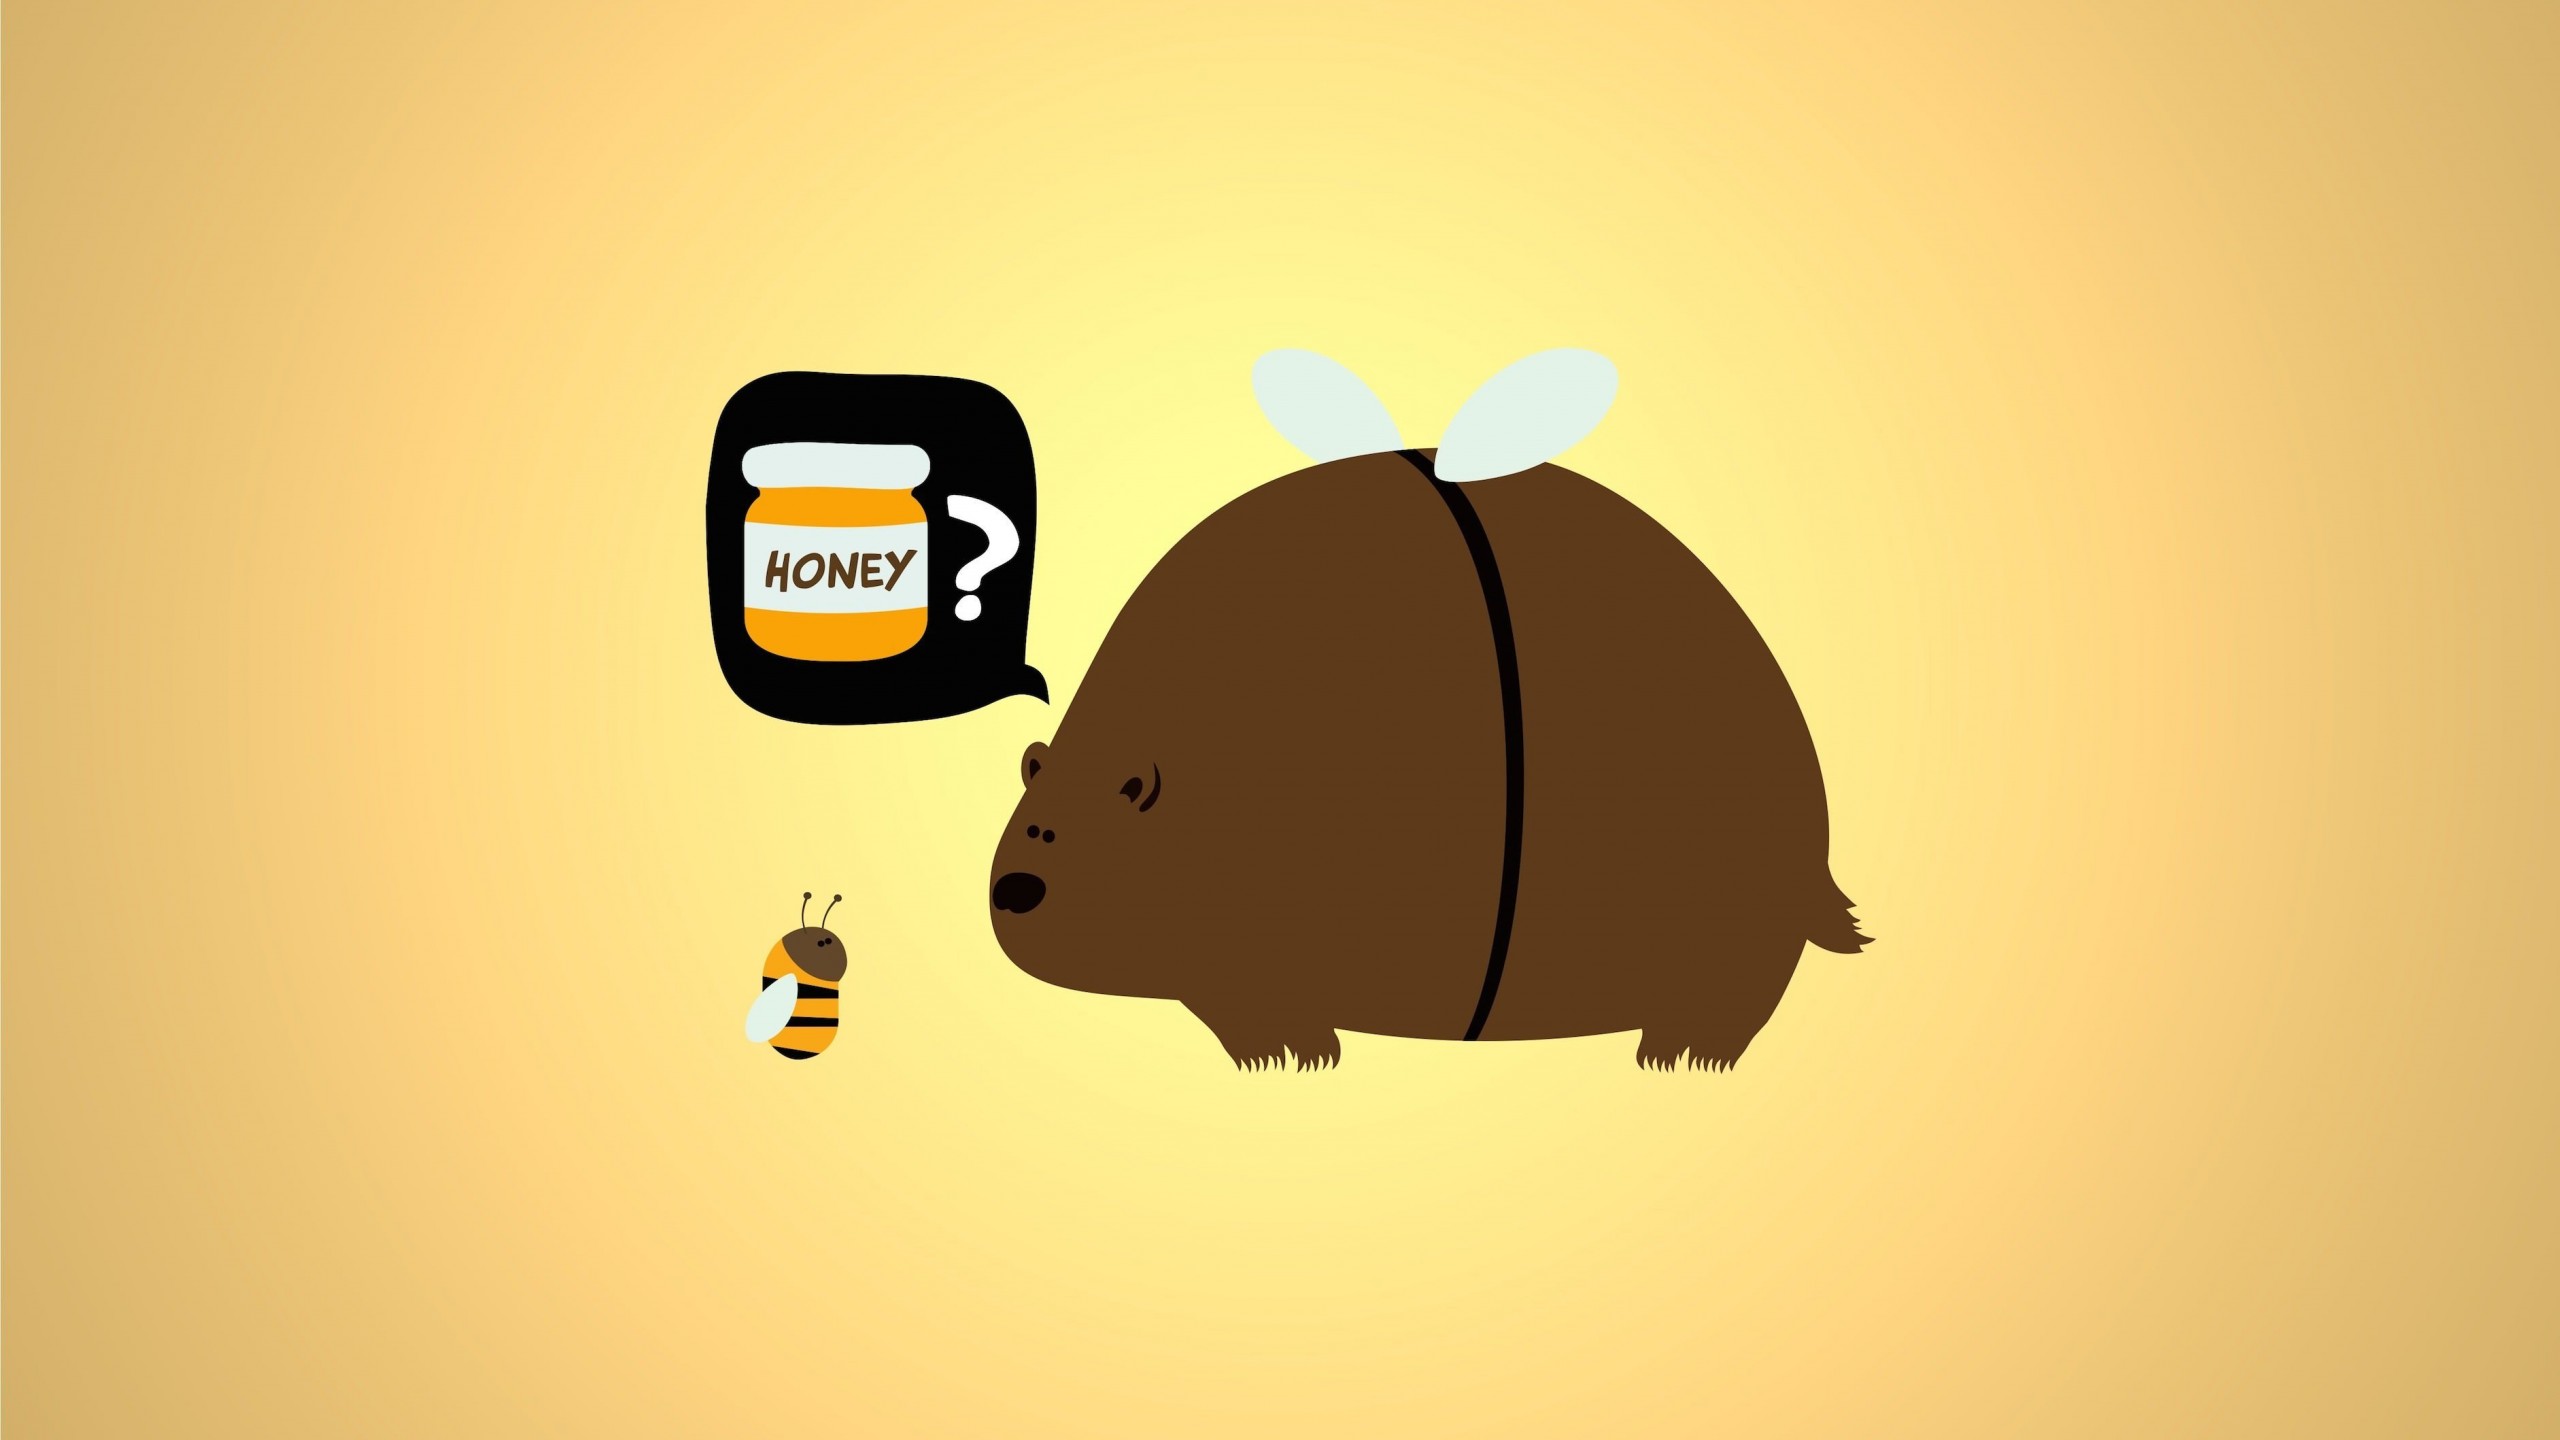 When a Bear Meet a Bee Wallpaper for Desktop 2560x1440